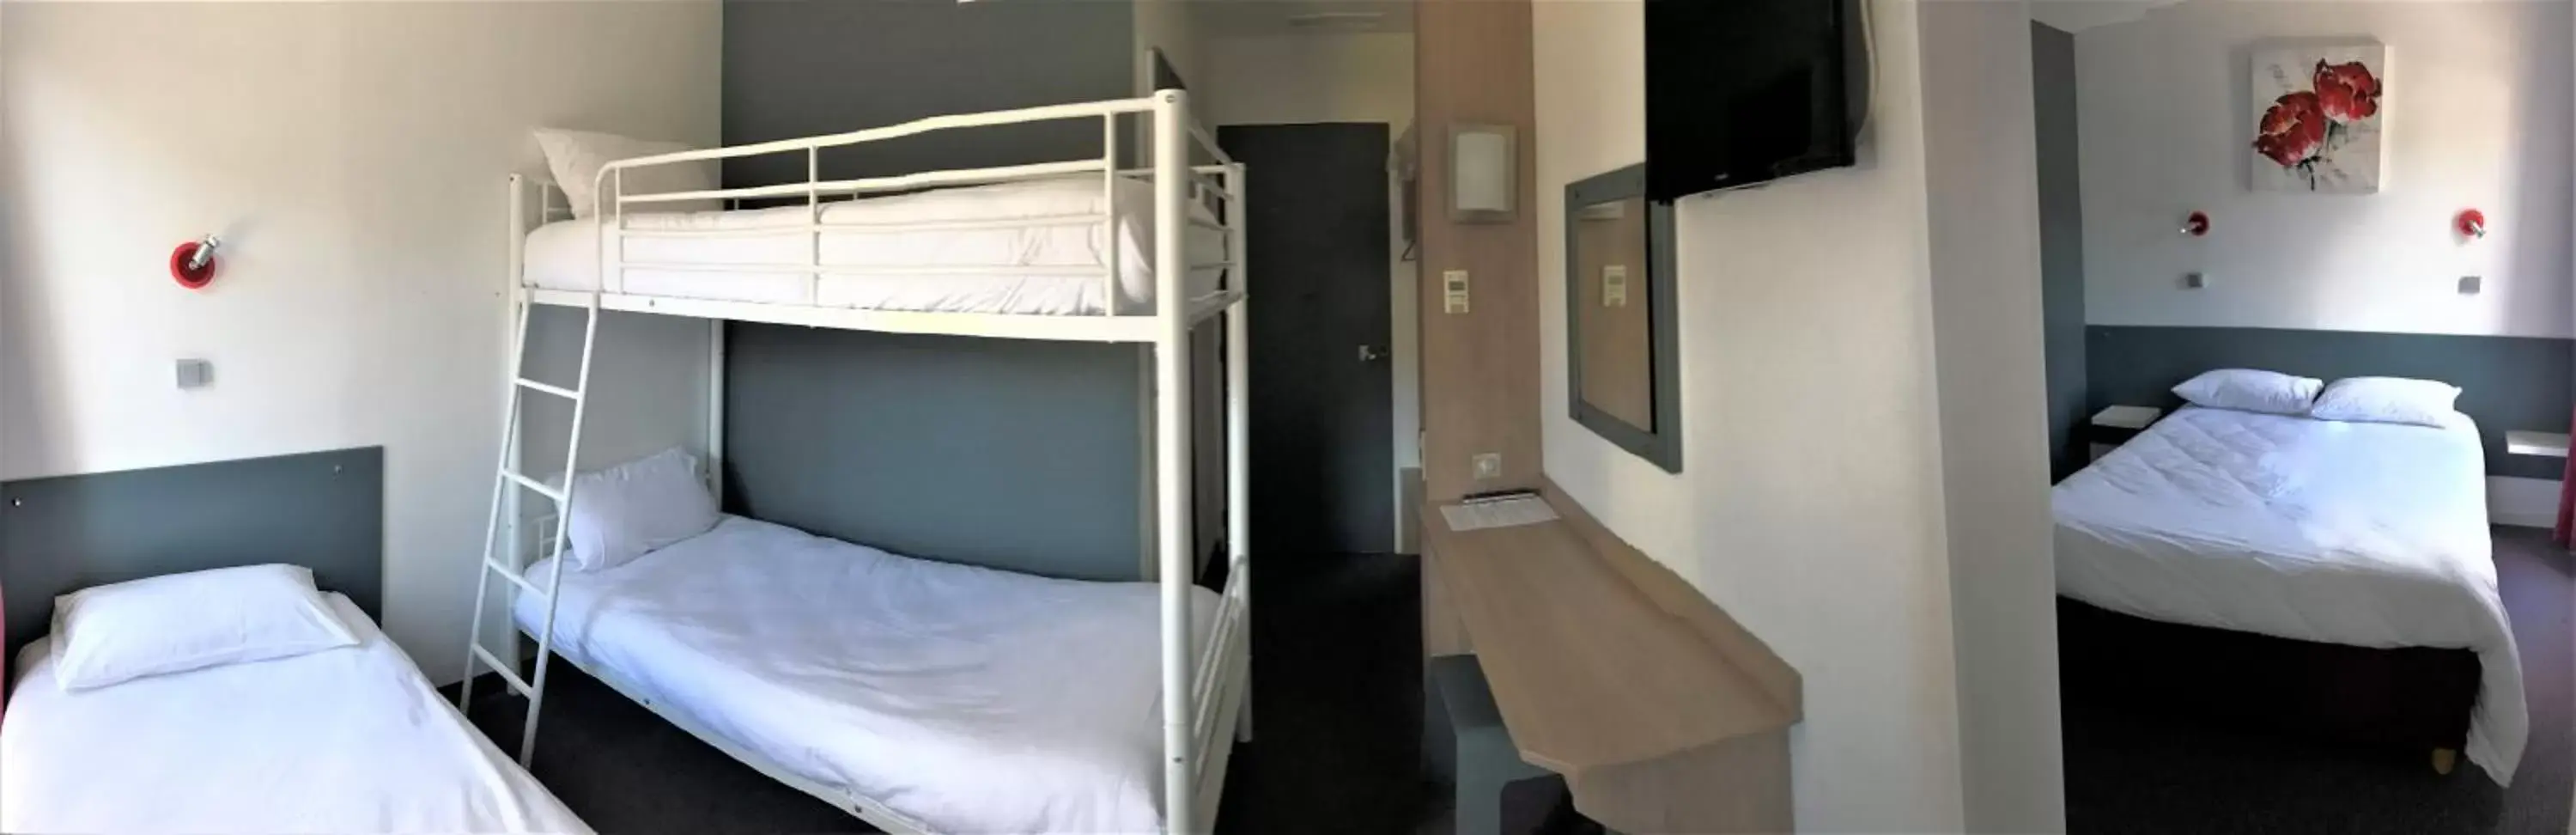 Bedroom, Bunk Bed in HALT HOTEL - Choisissez l'Hôtellerie Indépendante